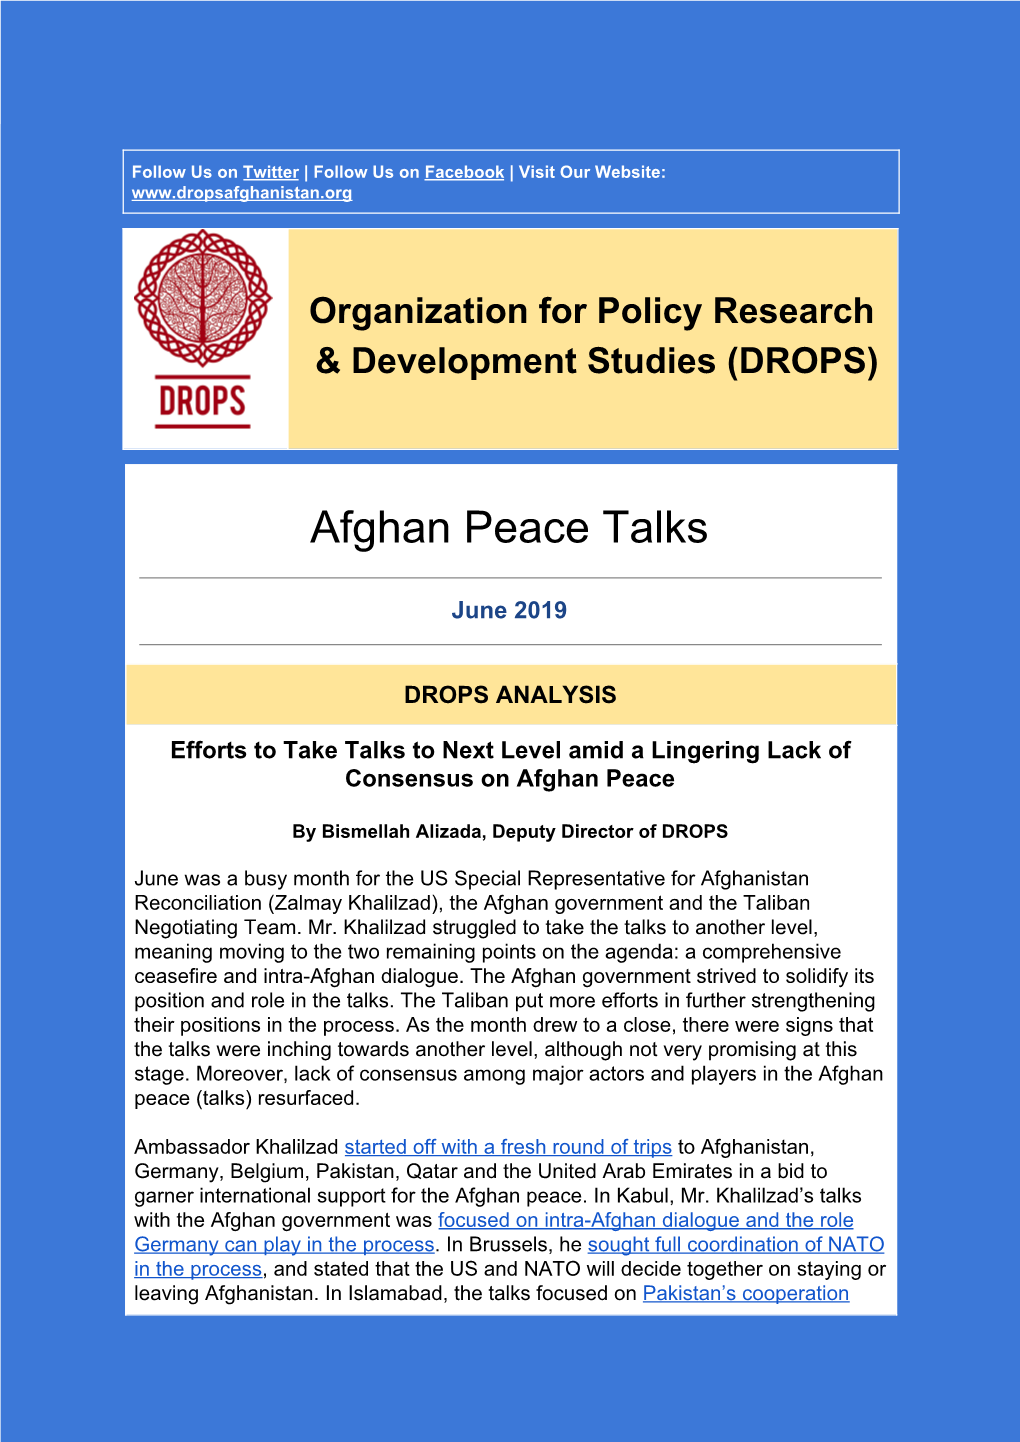 Afghan Peace Talks Newsletter